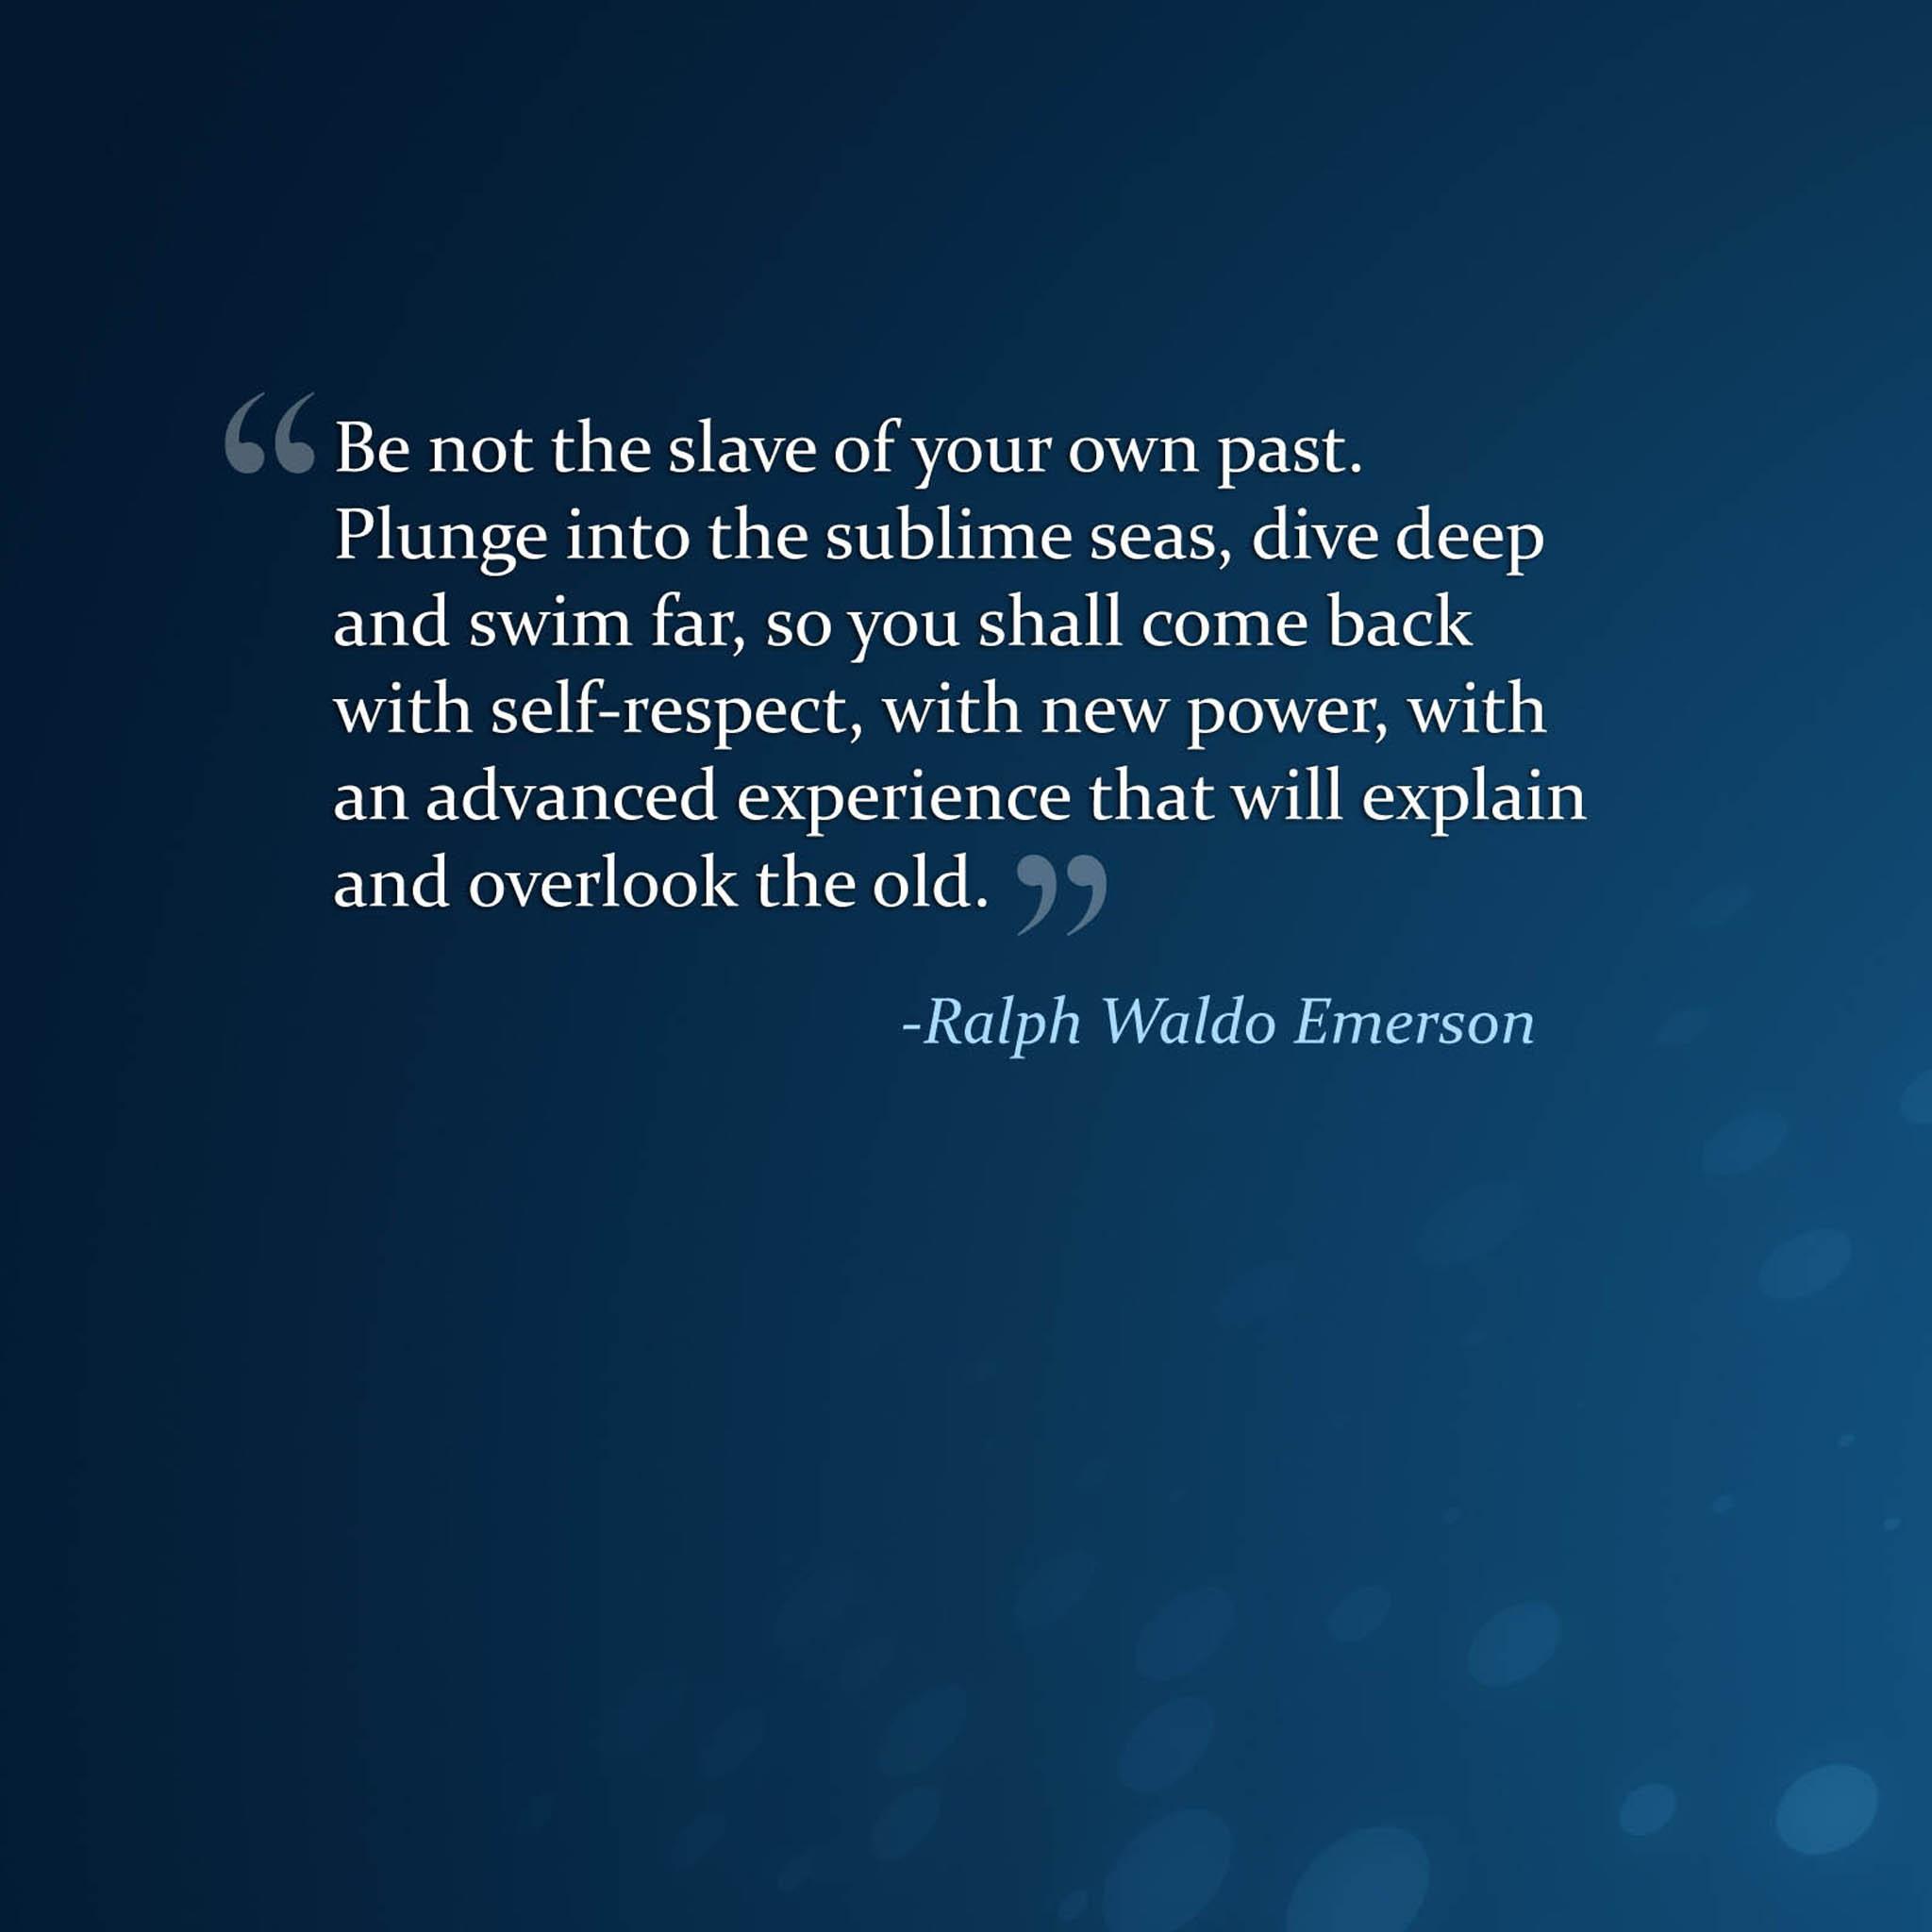 Ralph Waldo Emerson's quote #7